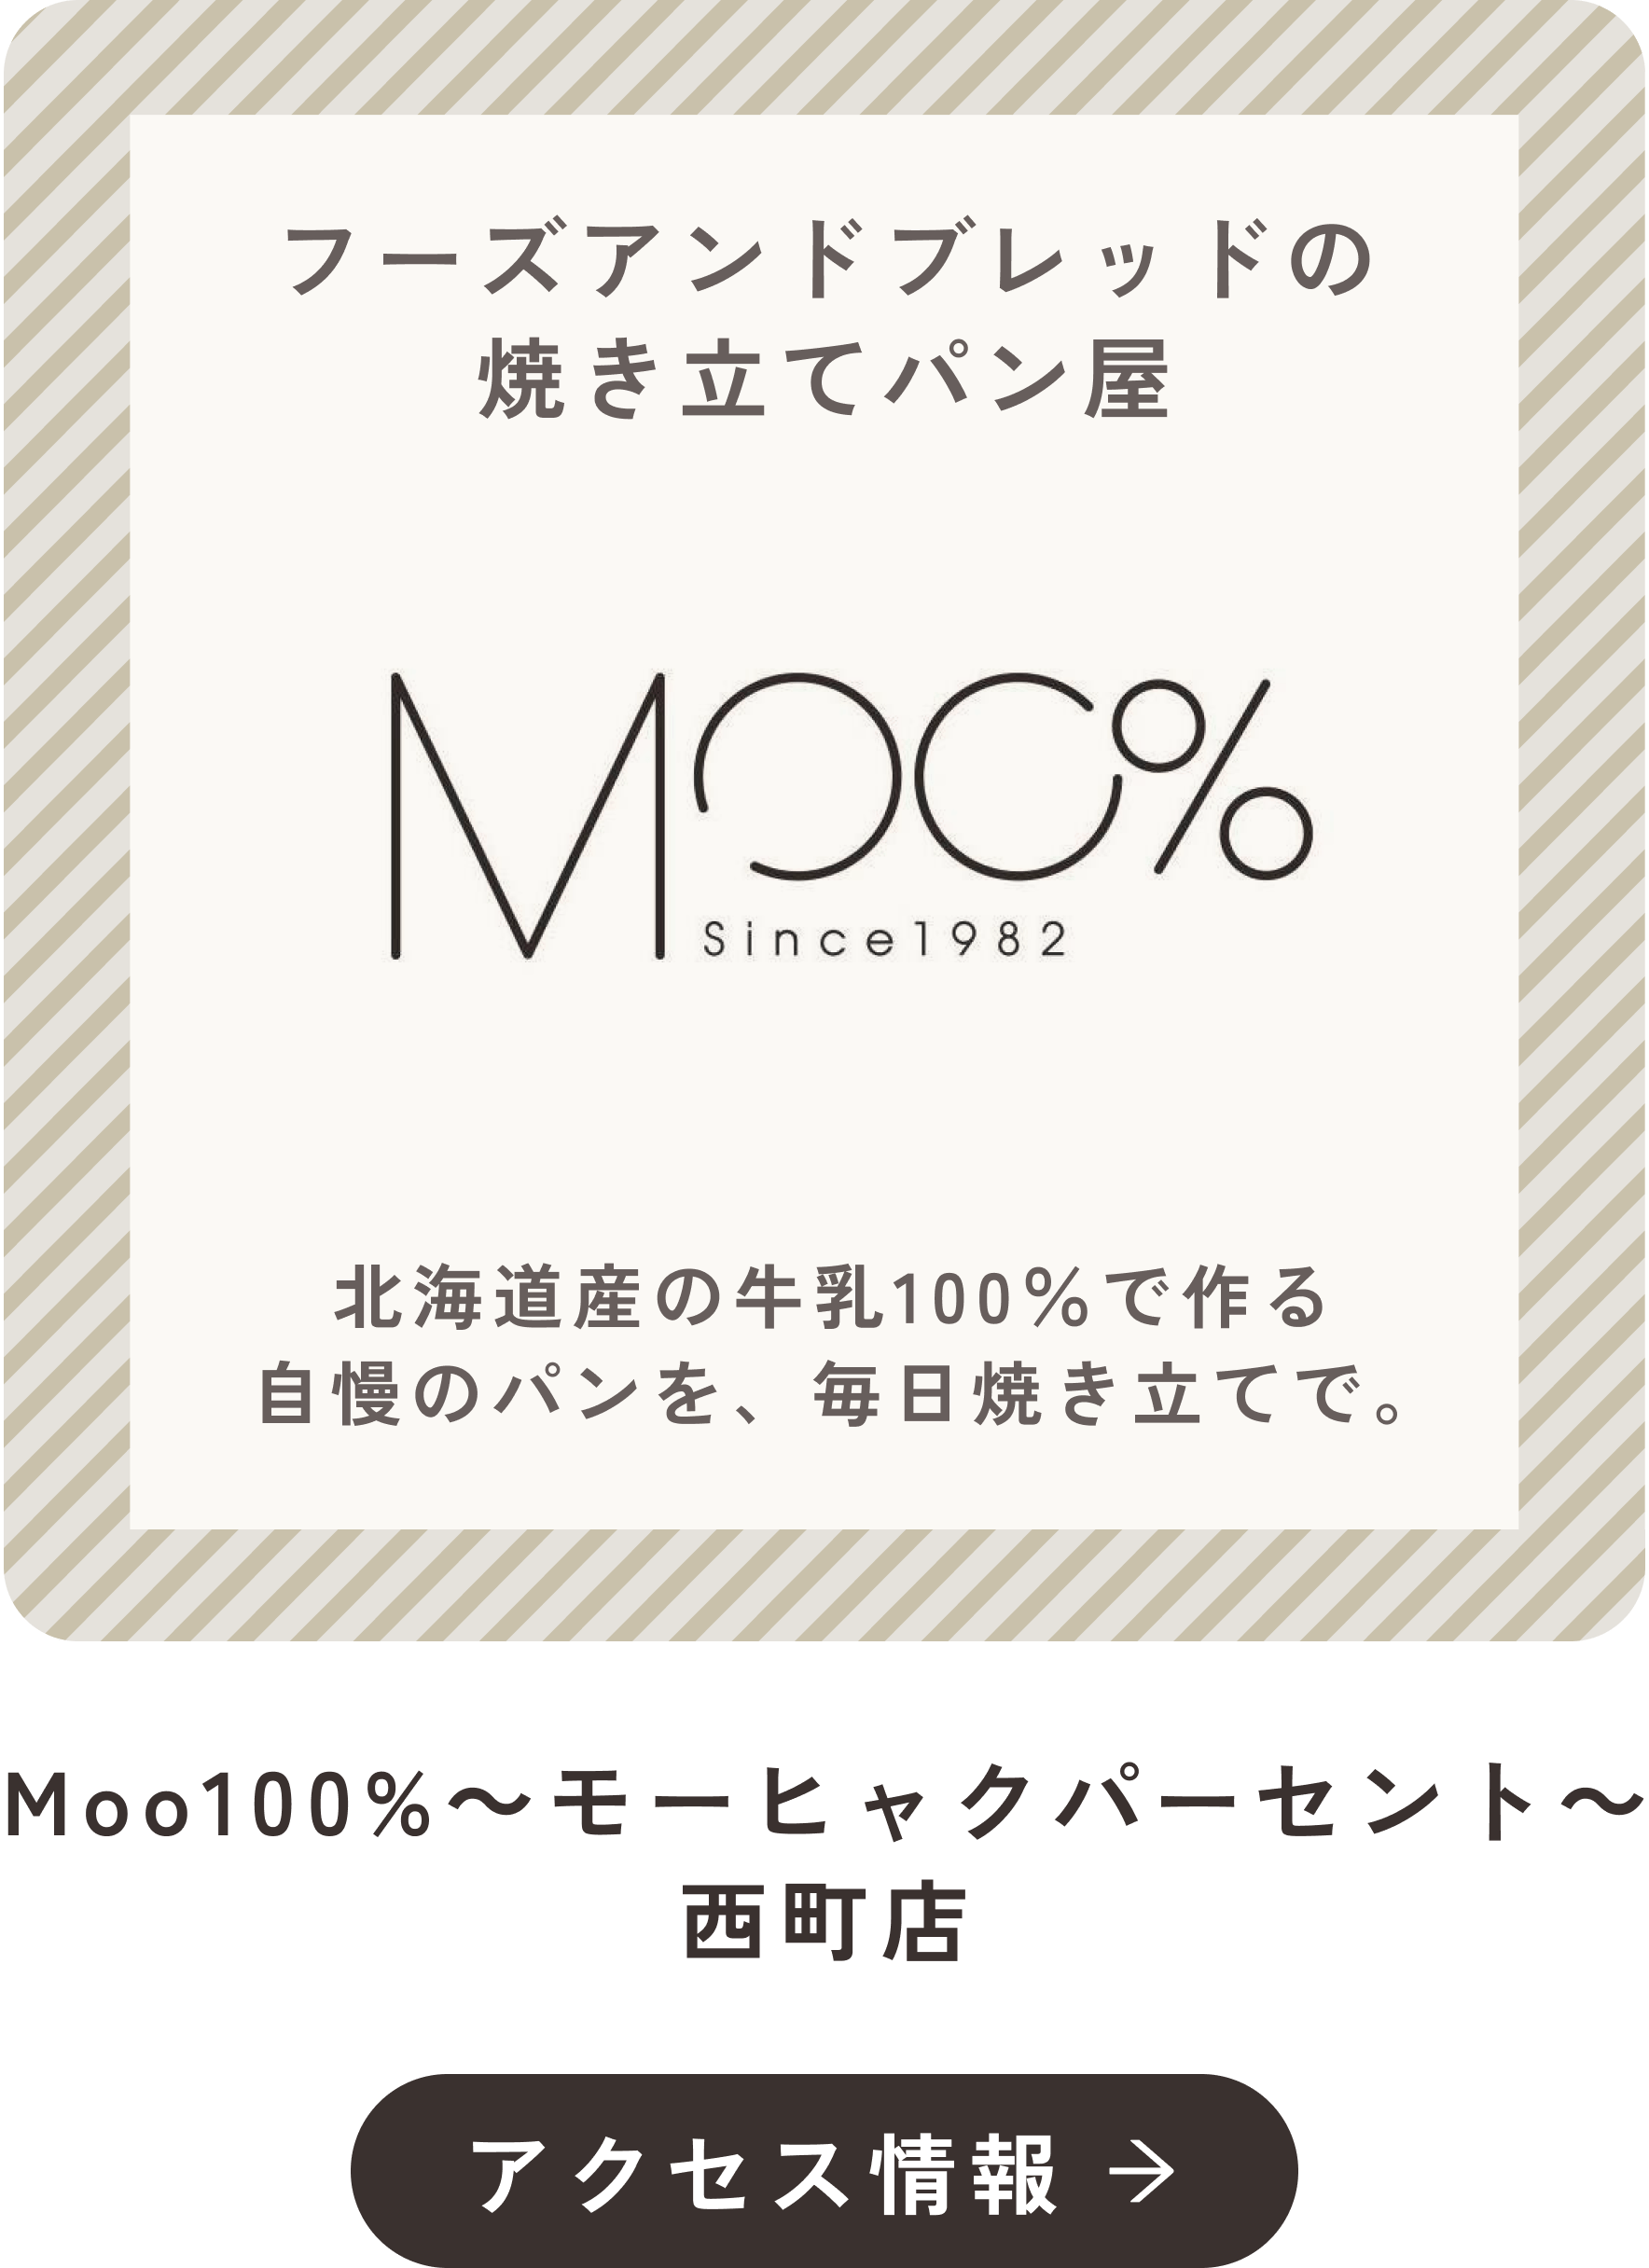 Moo100%〜モーヒャクパーセント〜 西町店